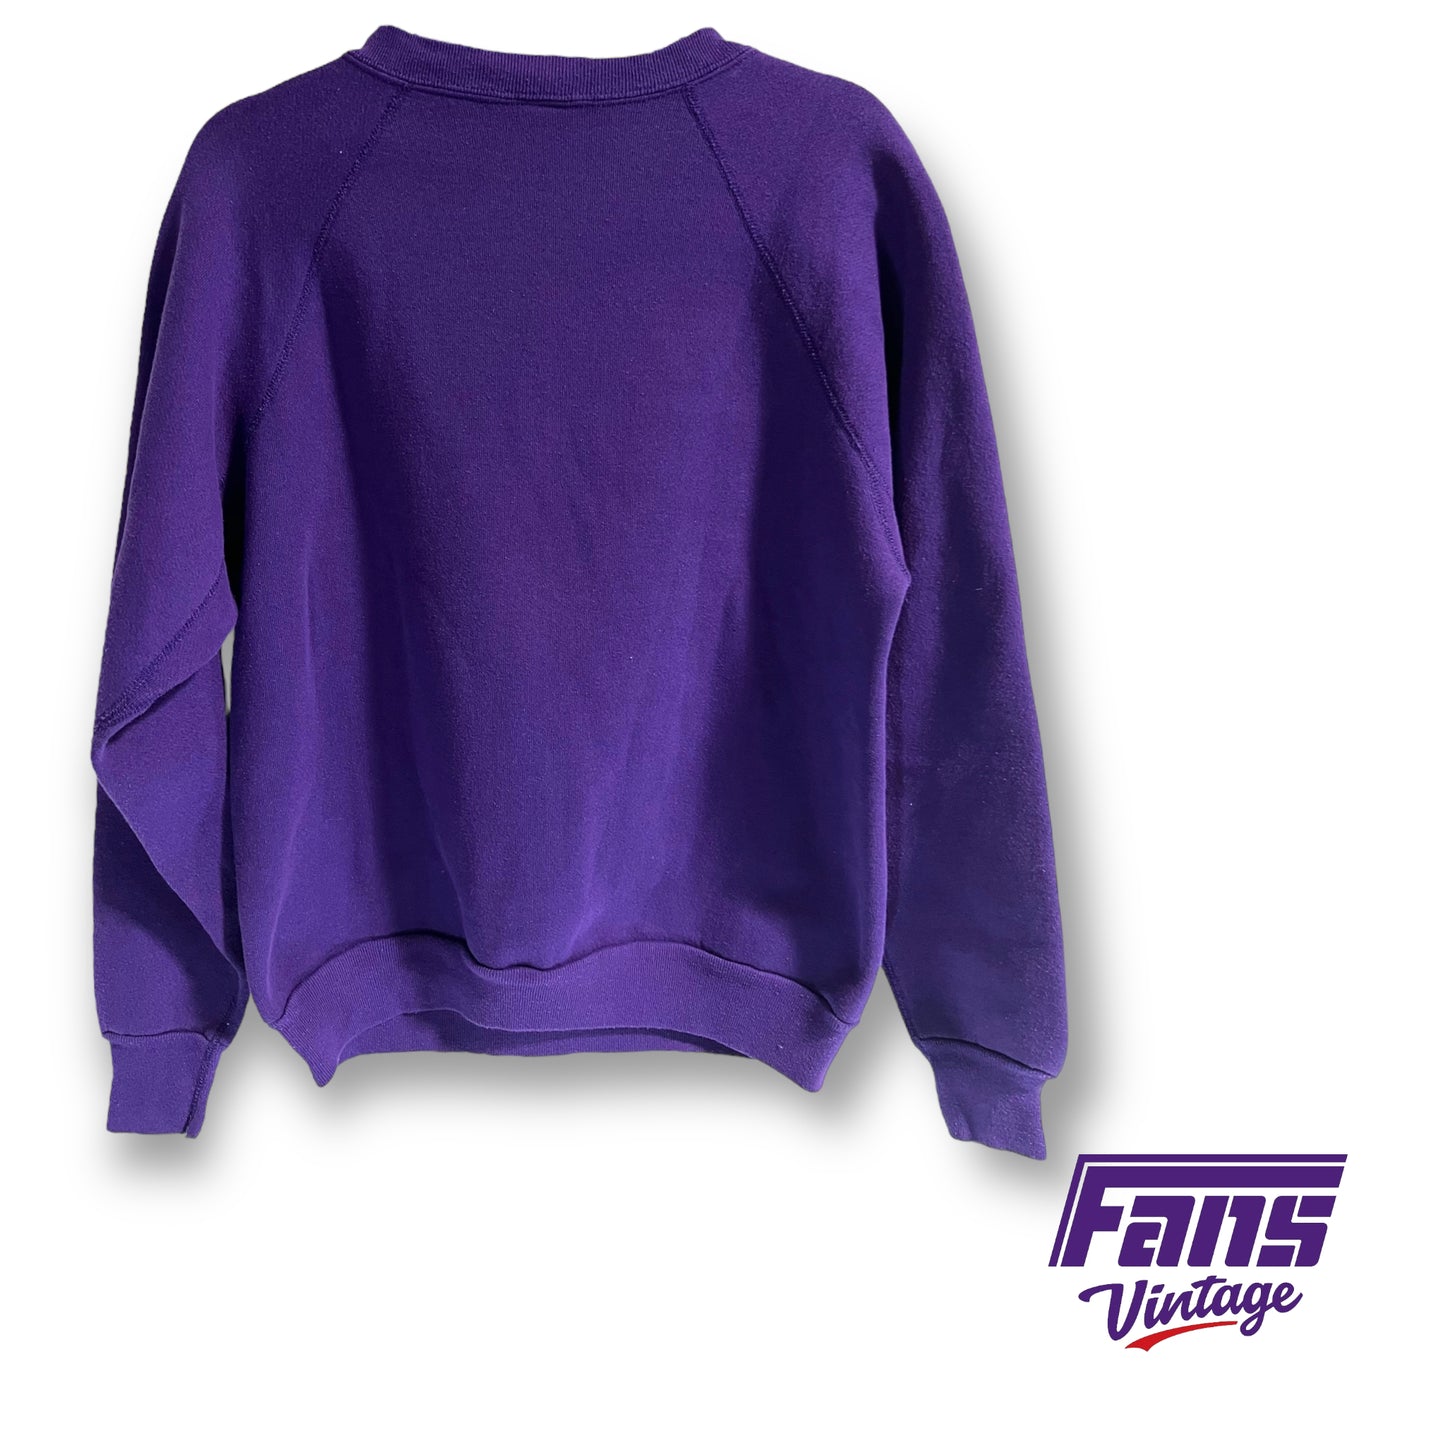 *Grail!* Ultra Rare 80s Vintage TCU Raglan Crewneck Sweater